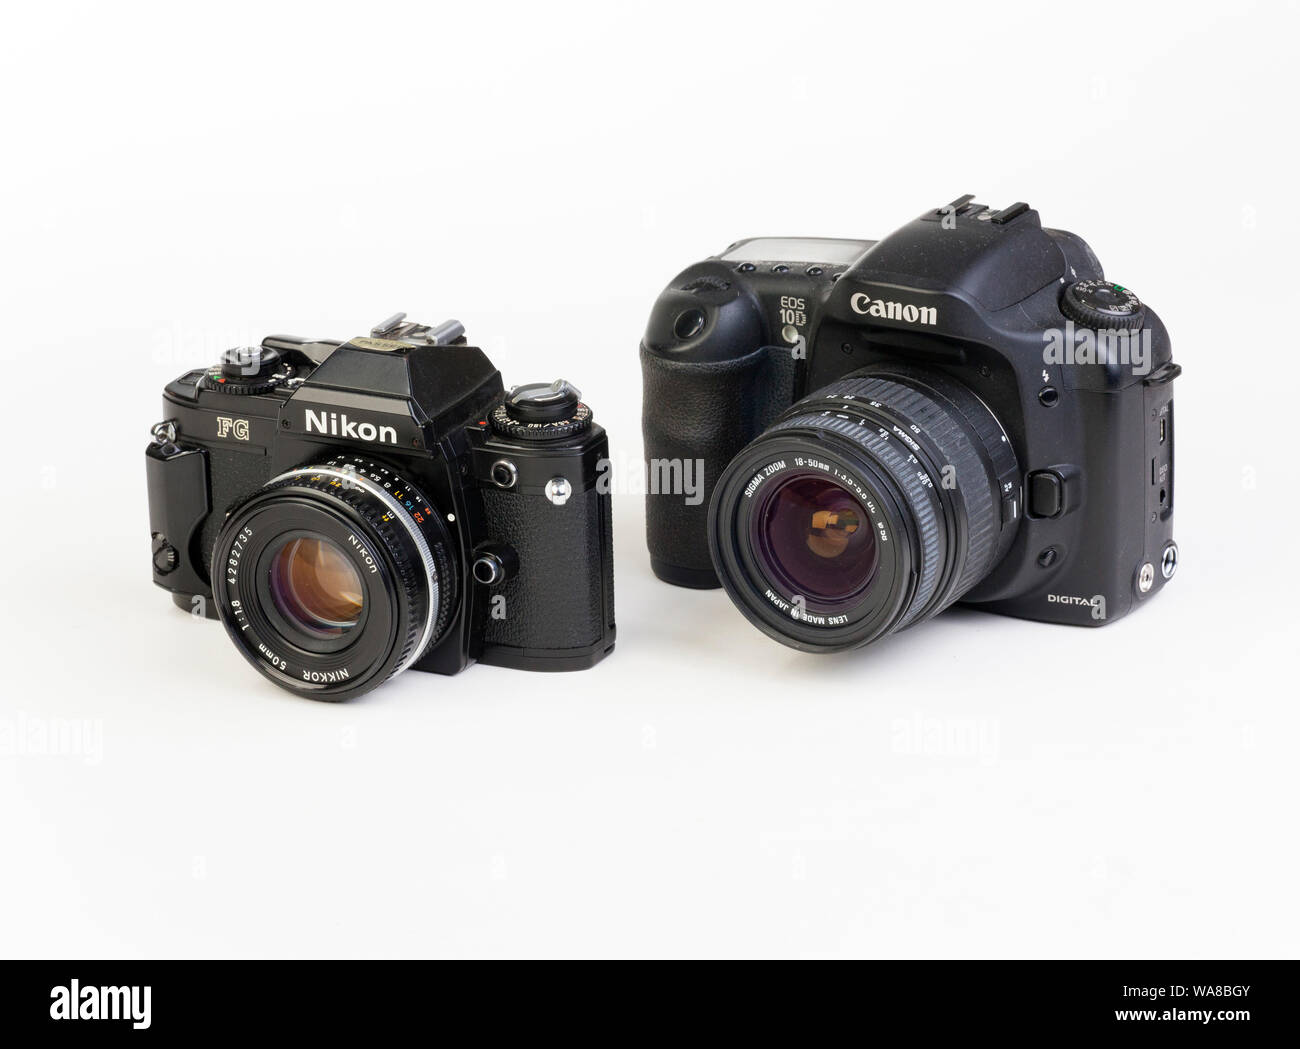 Nikon FG SLR fotocamera a pellicola con Canon 10D fotocamera reflex digitale Foto Stock